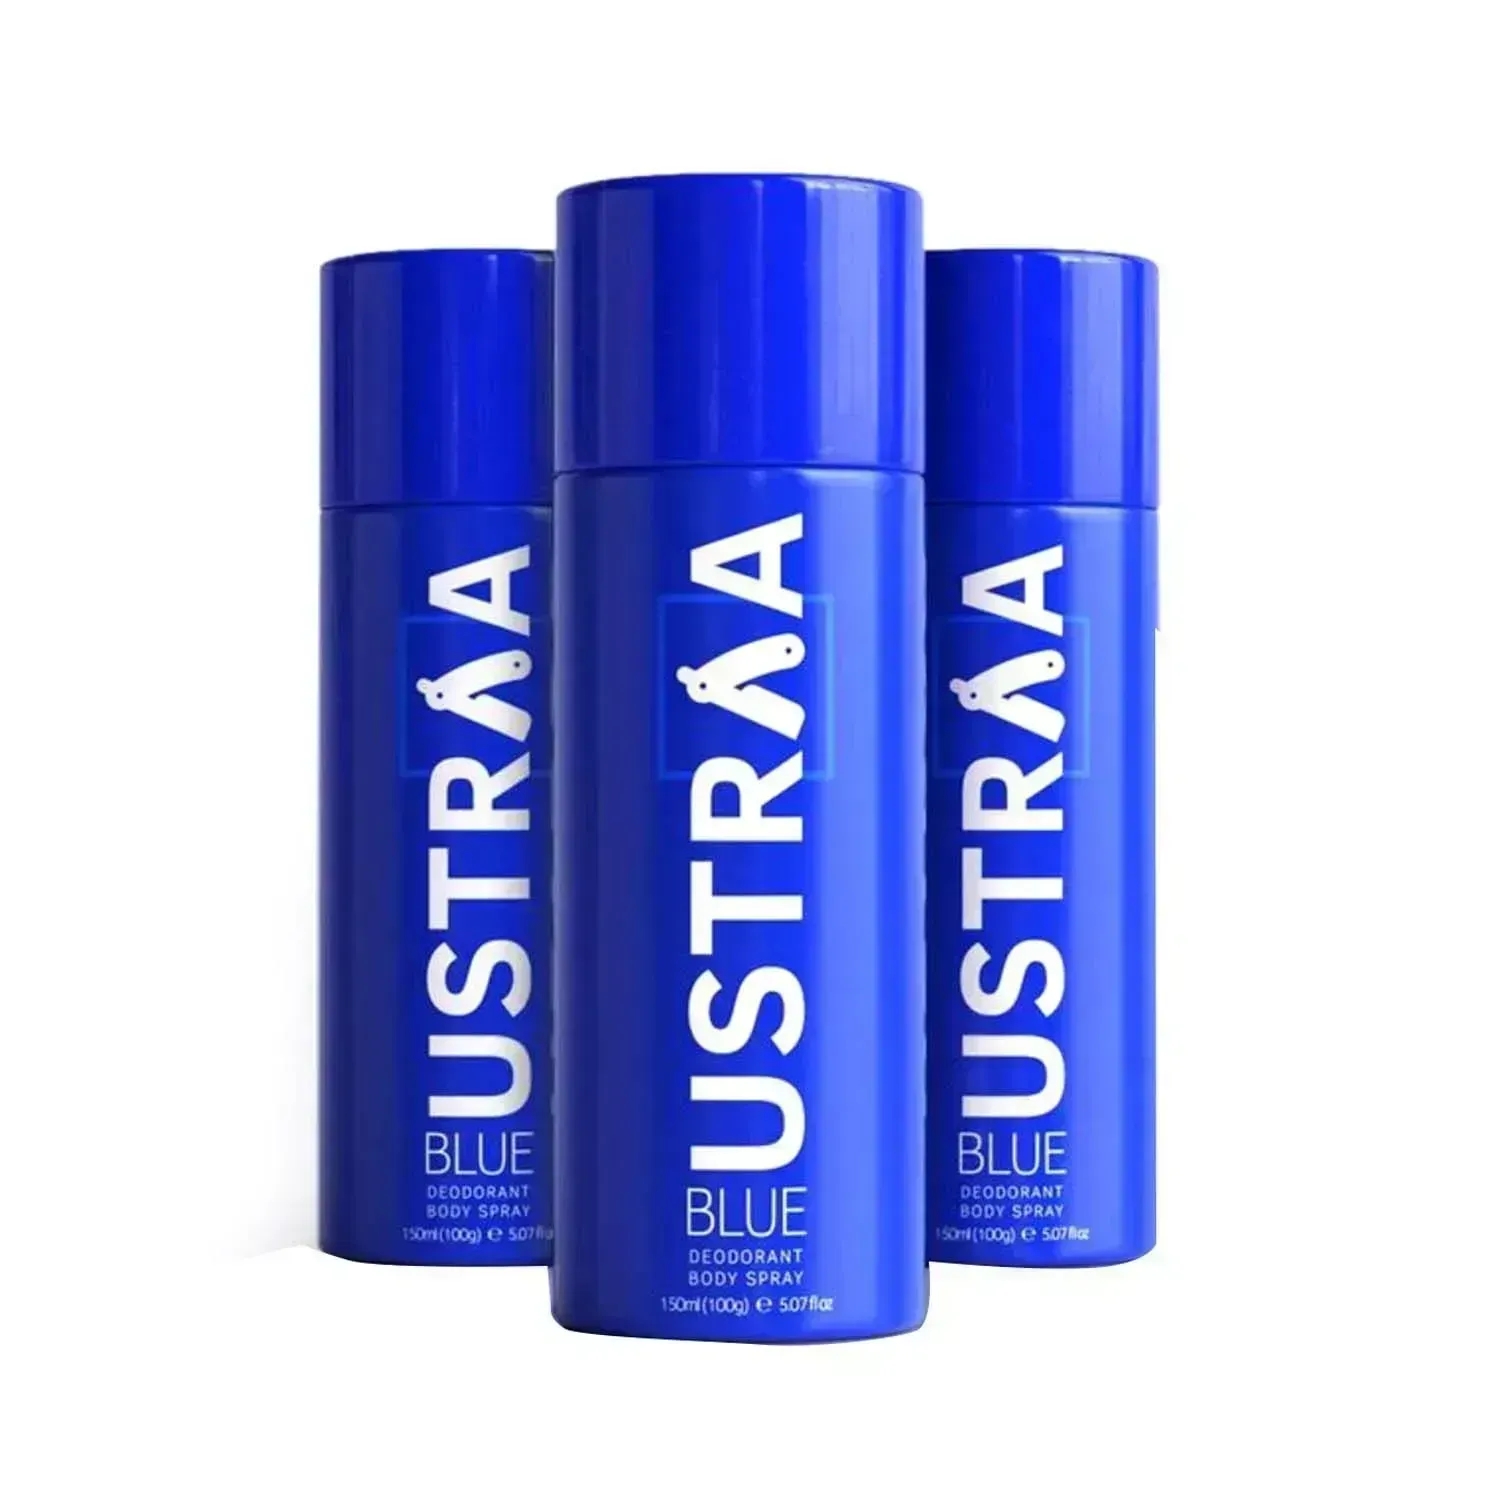 Ustraa Blue Deodorant Body Spray - (3 Pcs)